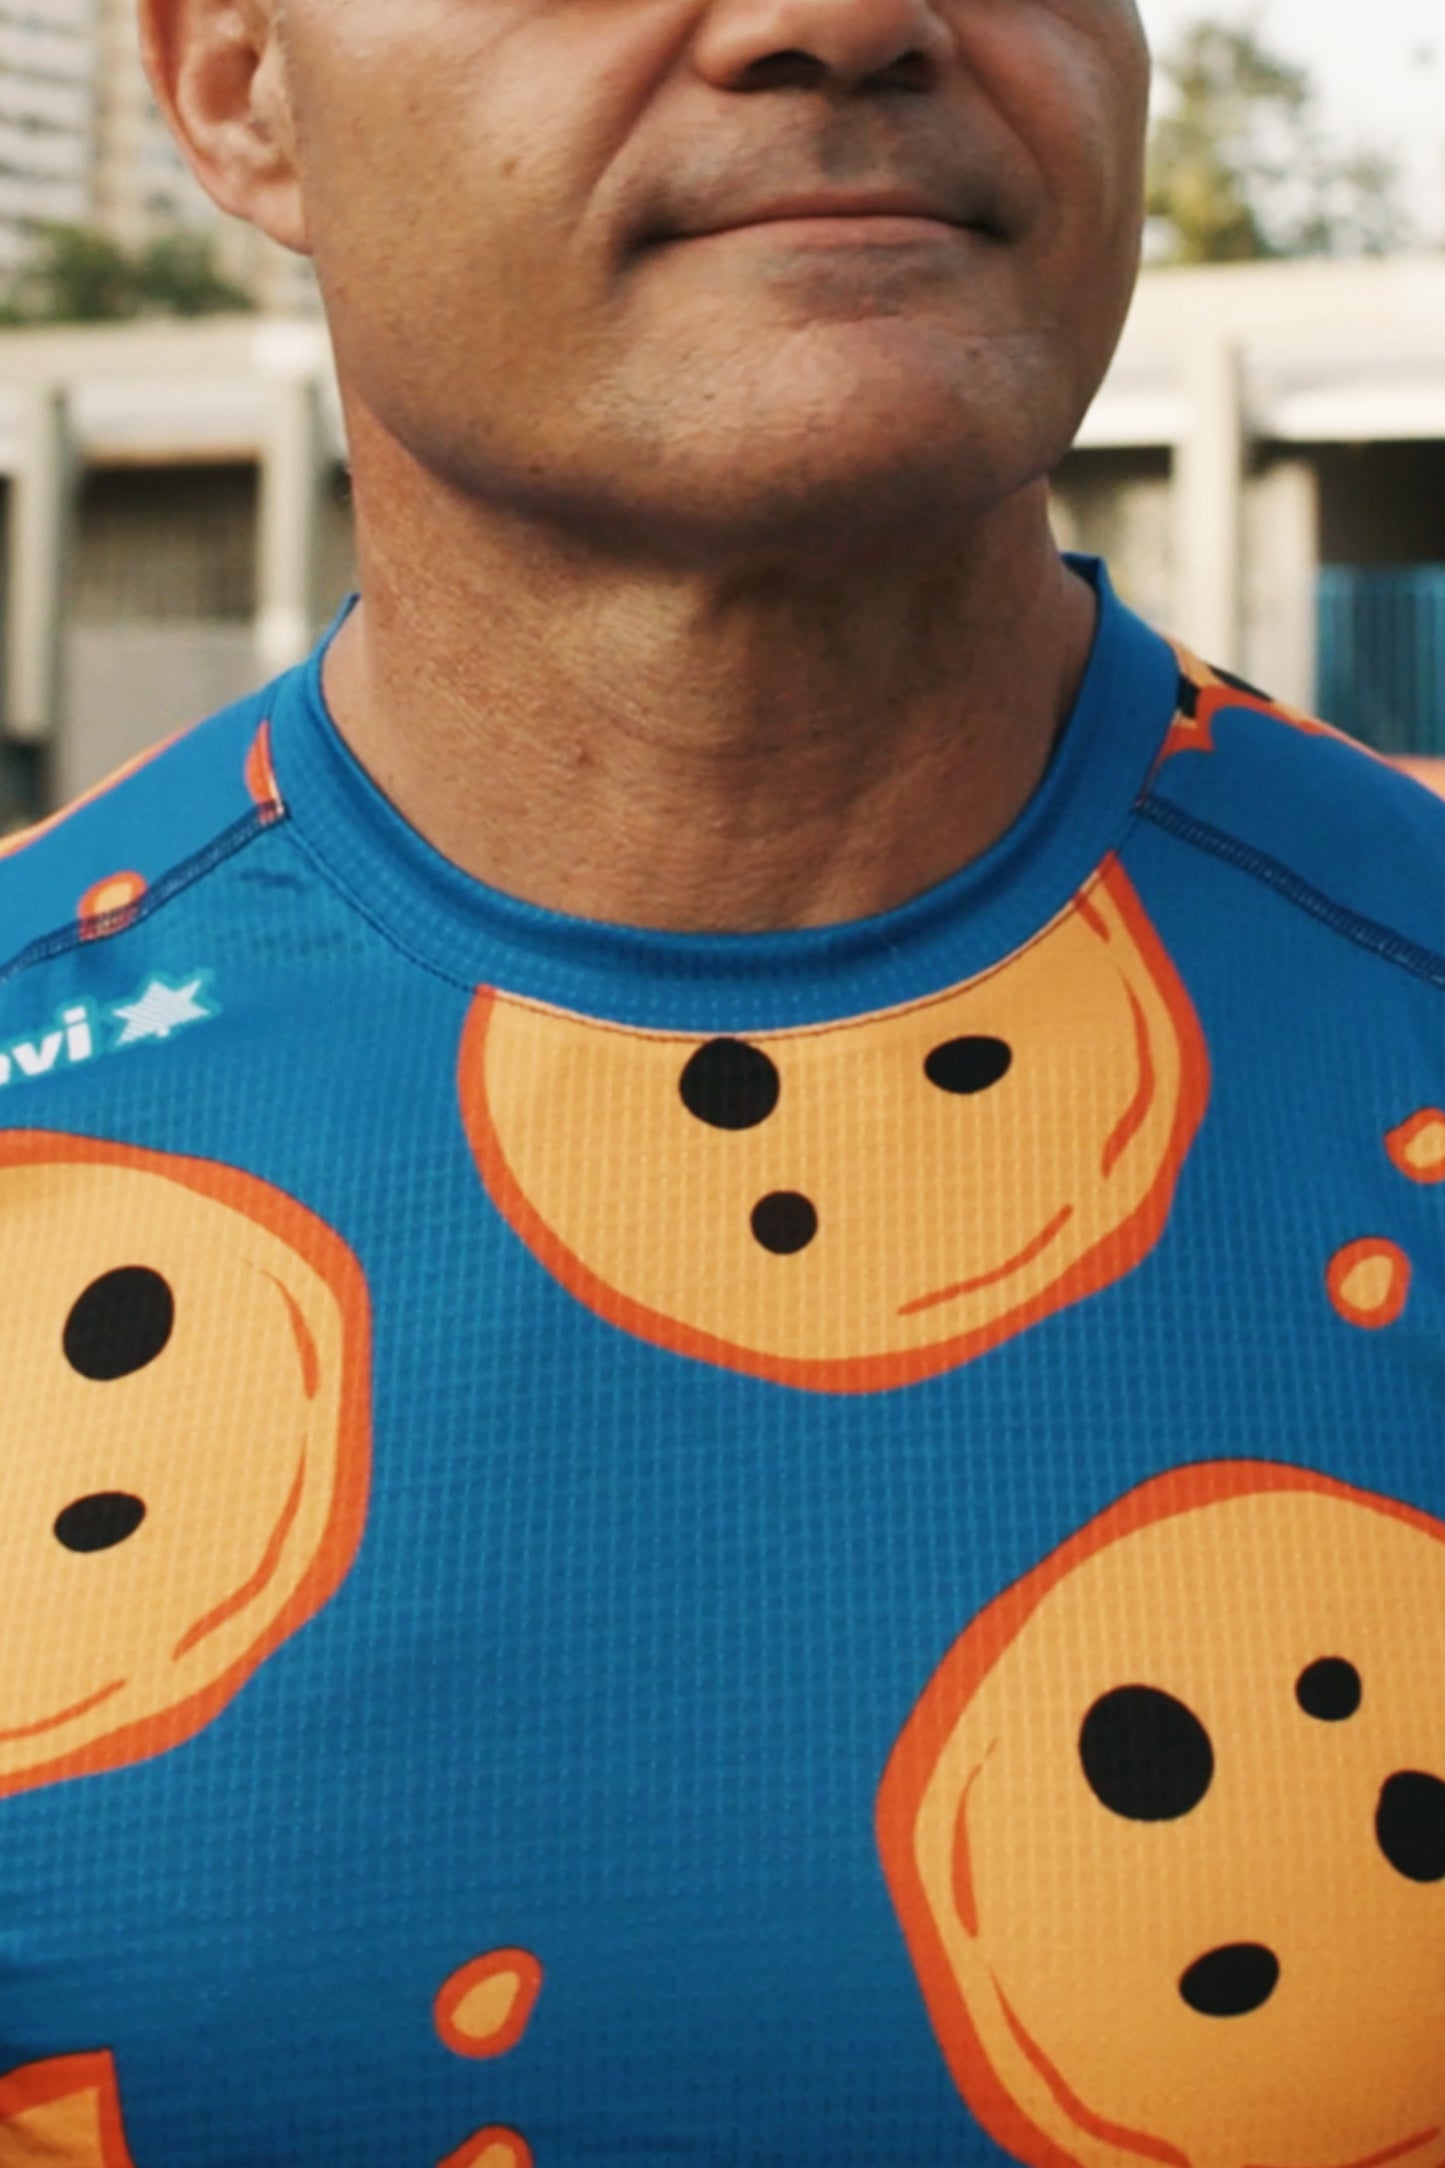 Luanvi Cookies - Camiseta Técnica Unisex